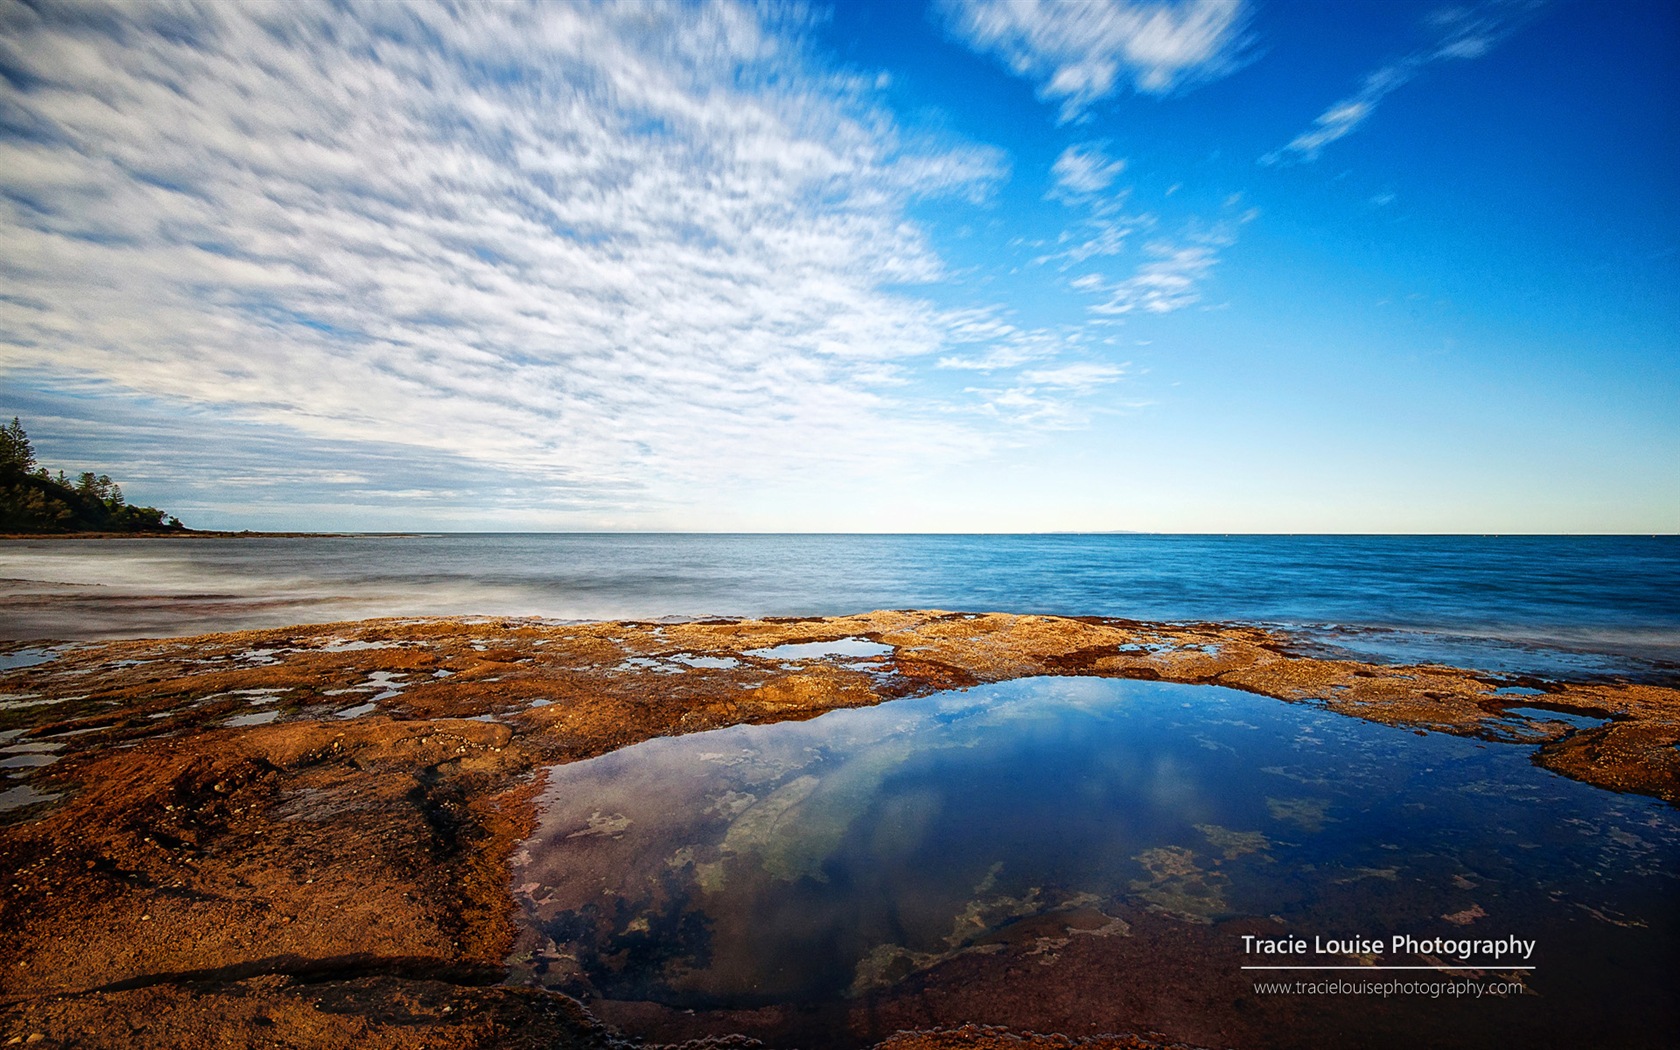 澳大利亚昆士兰州，风景秀丽，Windows 8 主题高清壁纸18 - 1680x1050